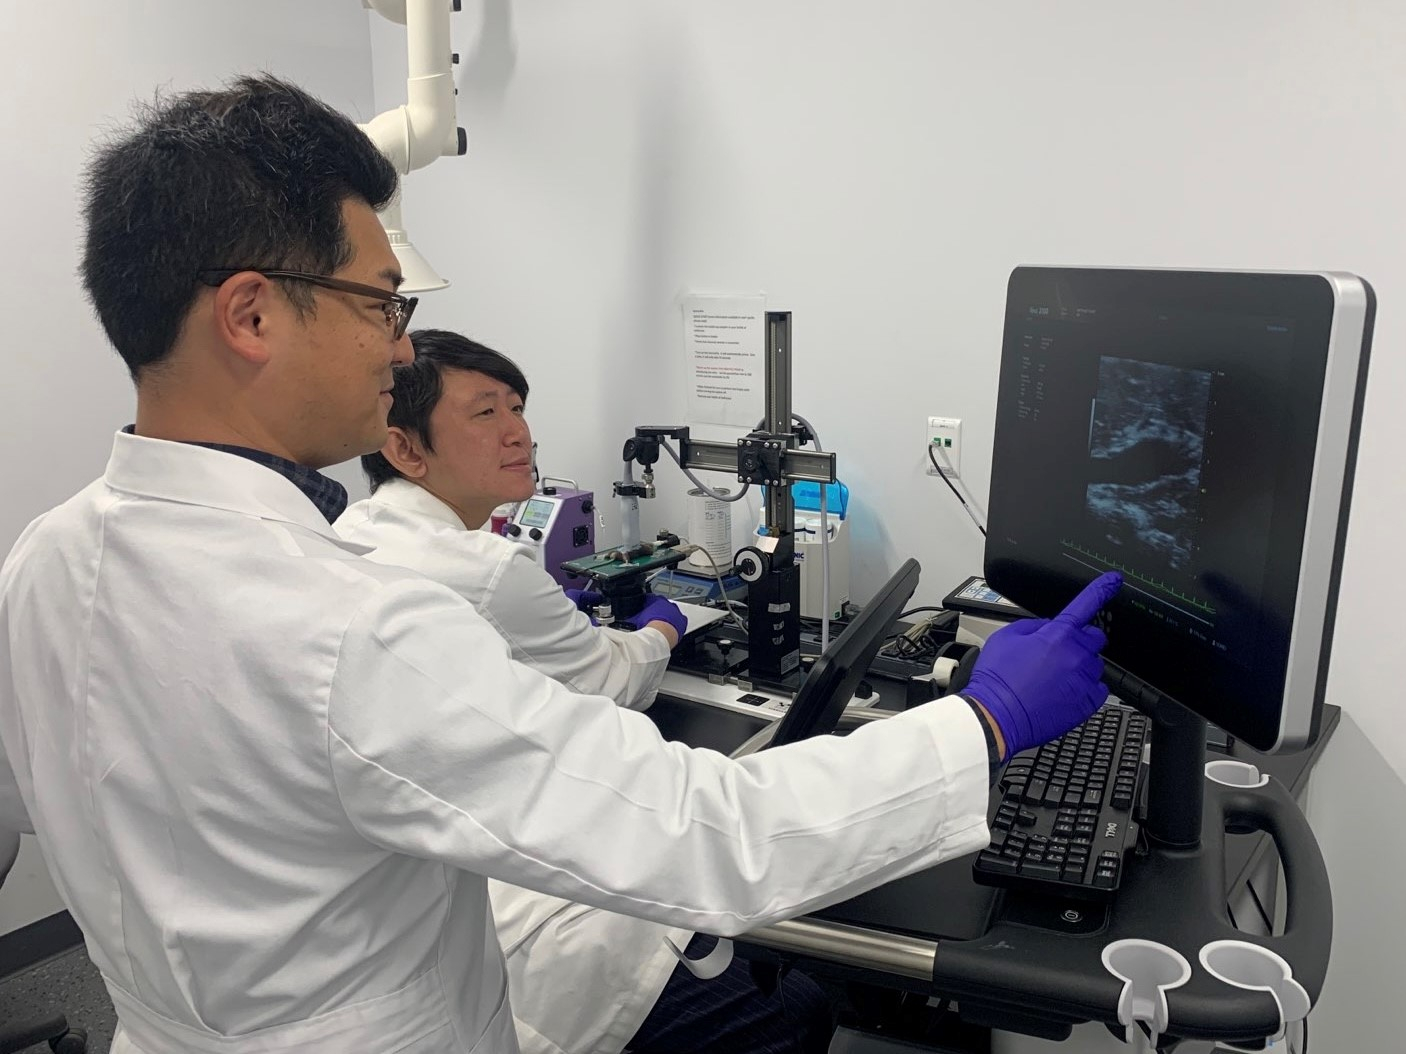 Hisashi Sawada, PhD and Sohei Ito, PhD use the Ultrasound Core equipment